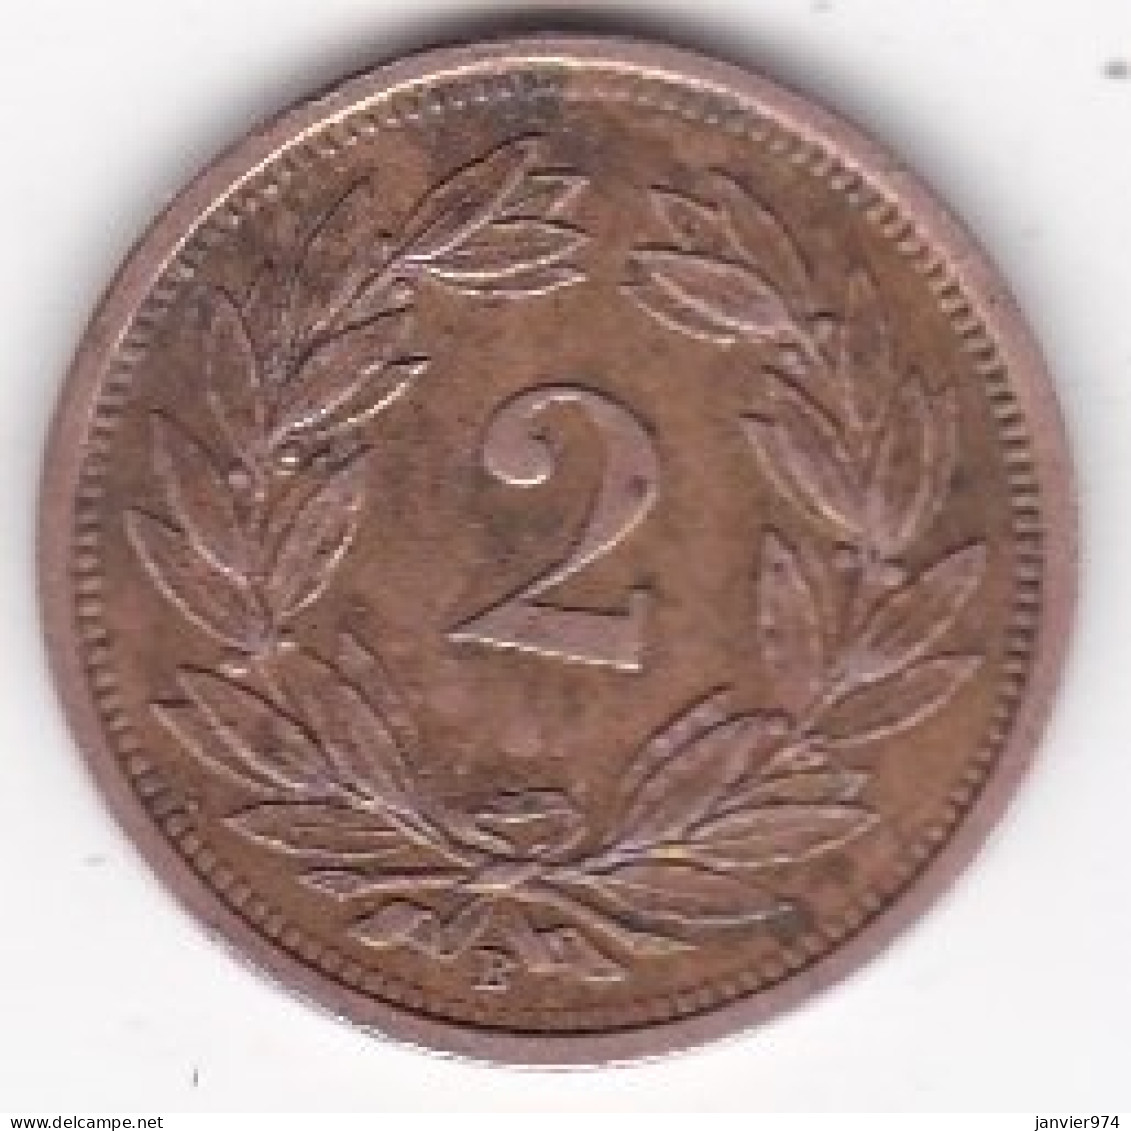 Suisse 2 Rappen 1929 B , En Bronze , KM# 4 - 2 Rappen